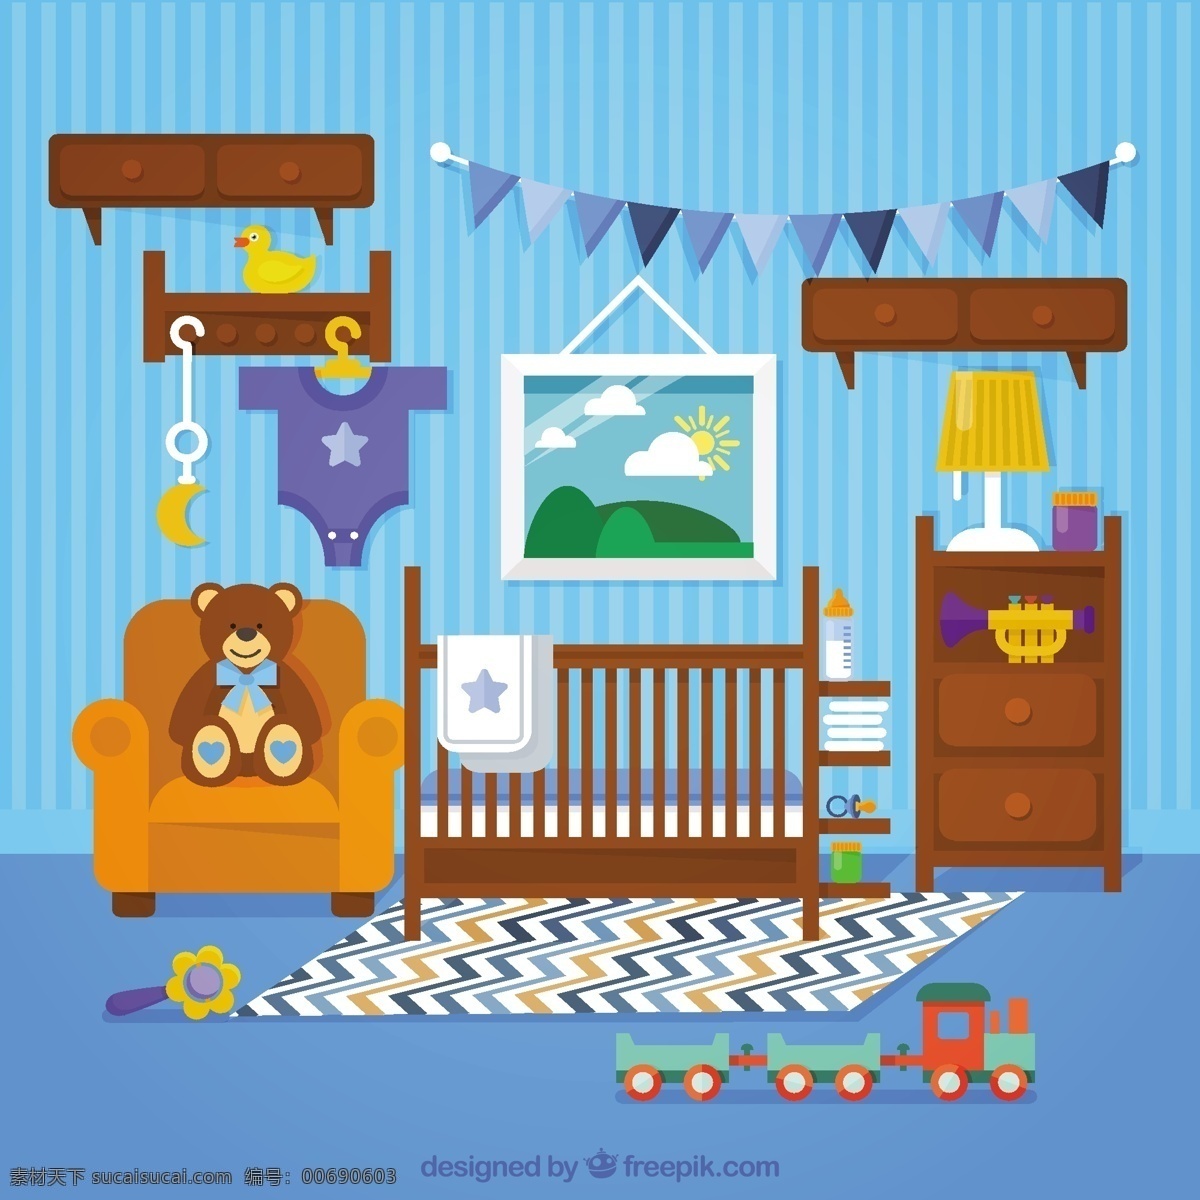 奇妙的婴儿房 木制家具 蓝色 墙壁 婴儿 婴儿淋浴 庆祝活动 墙 熊 家具 房间 火车 平板 新的 平面设计 玩具 木制 公告 泰迪熊 淋浴 出生